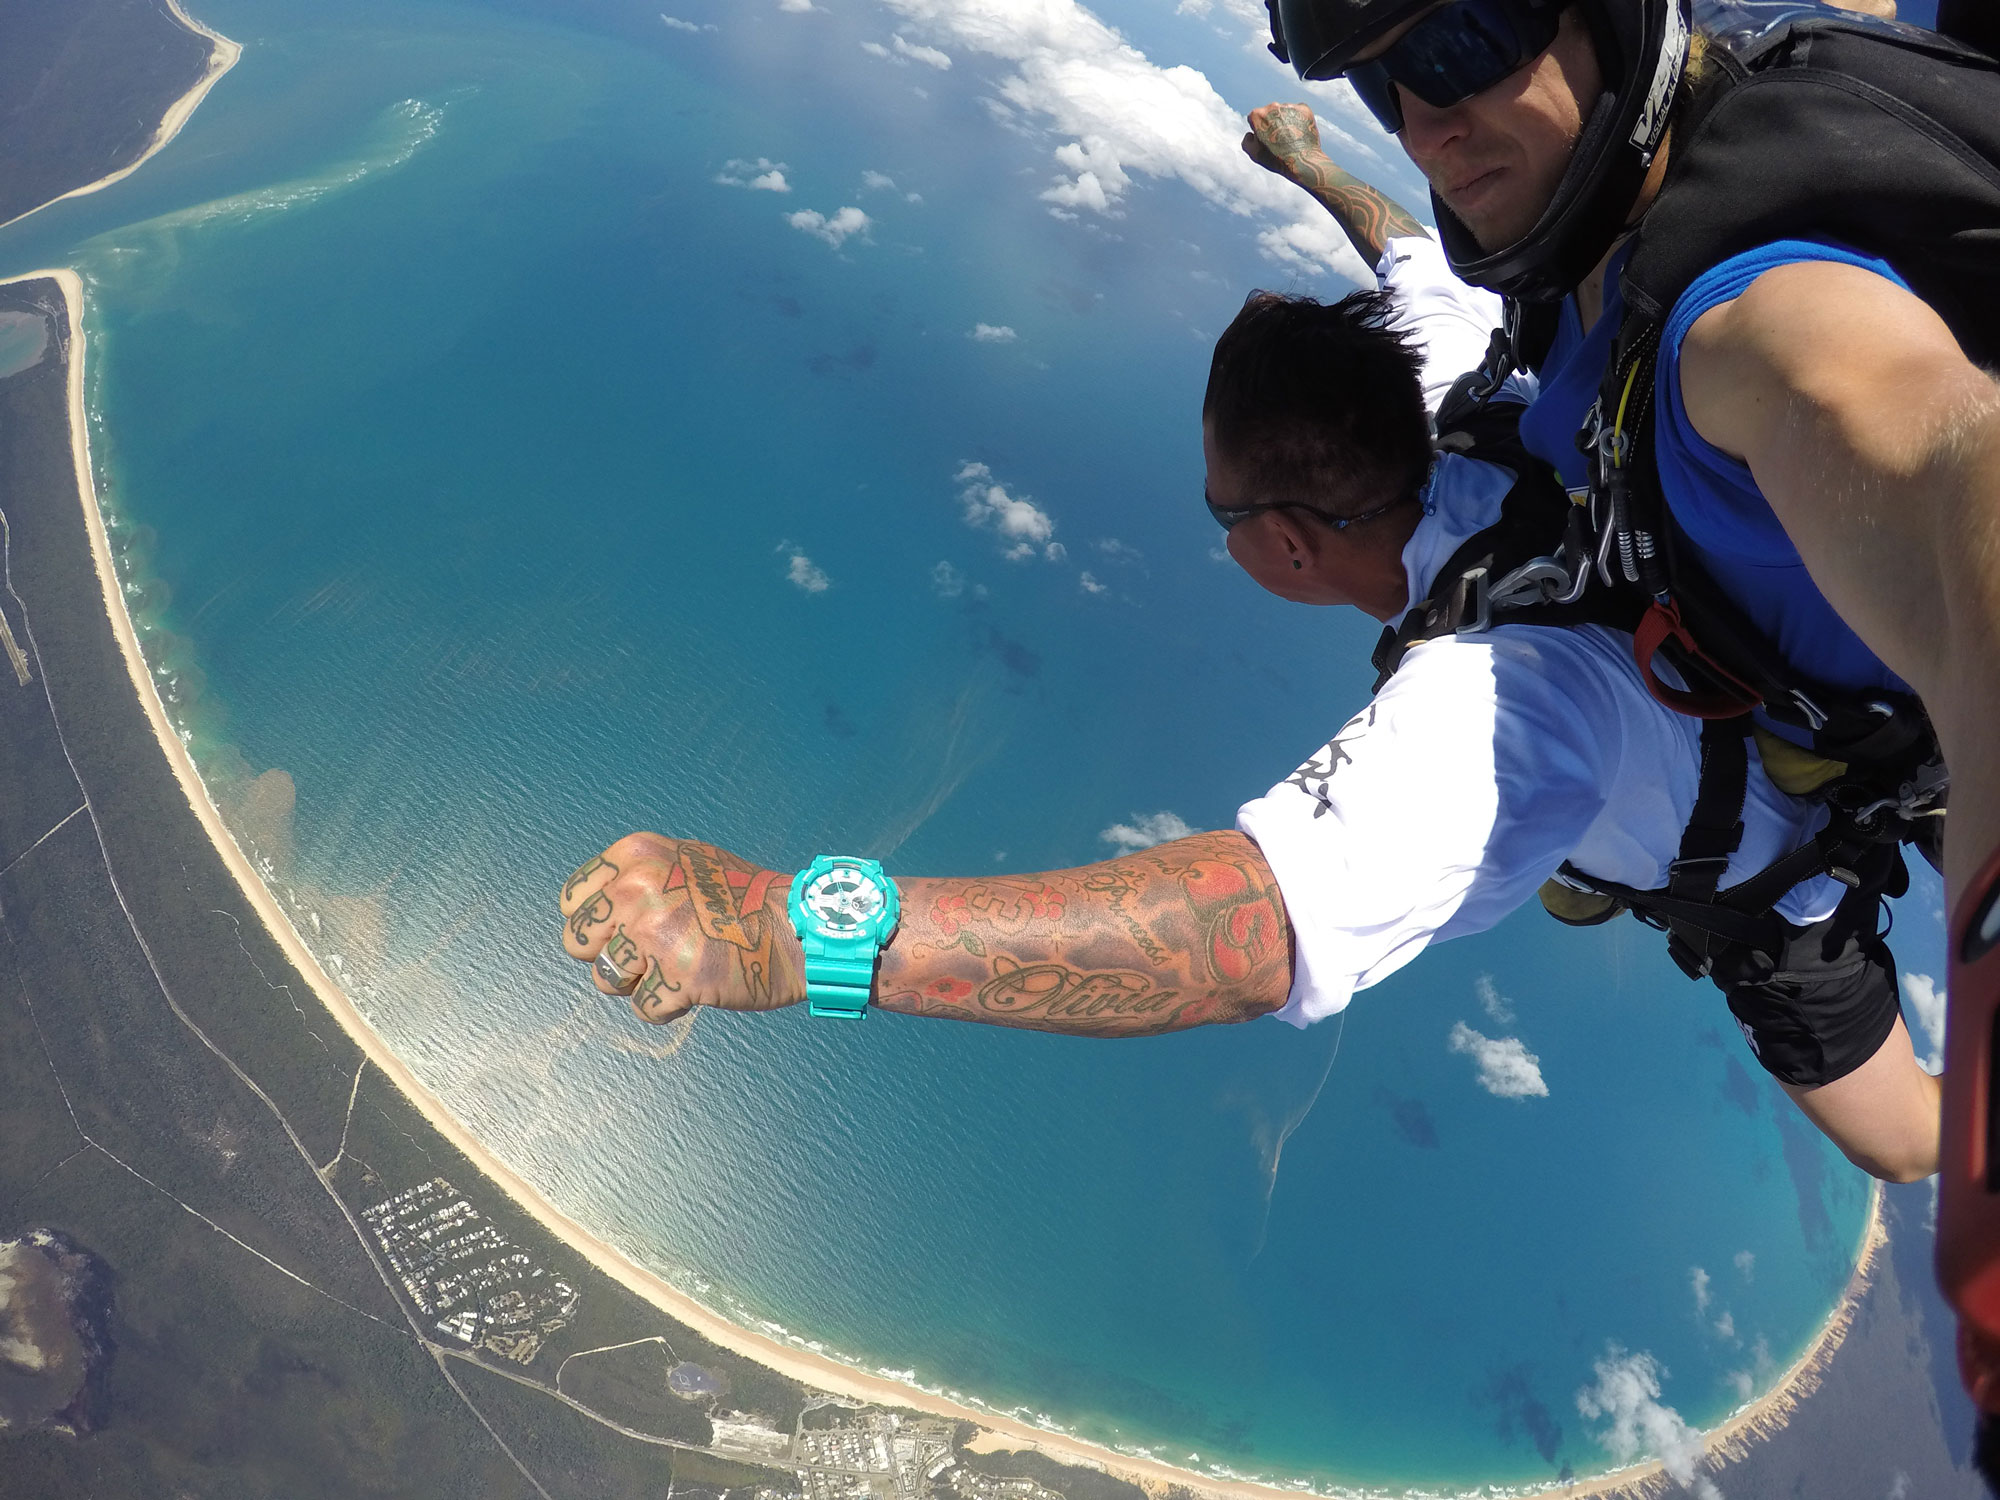 布里斯班费沙岛/布莱比岛高空跳伞(体验永生难忘的自由落体运动)